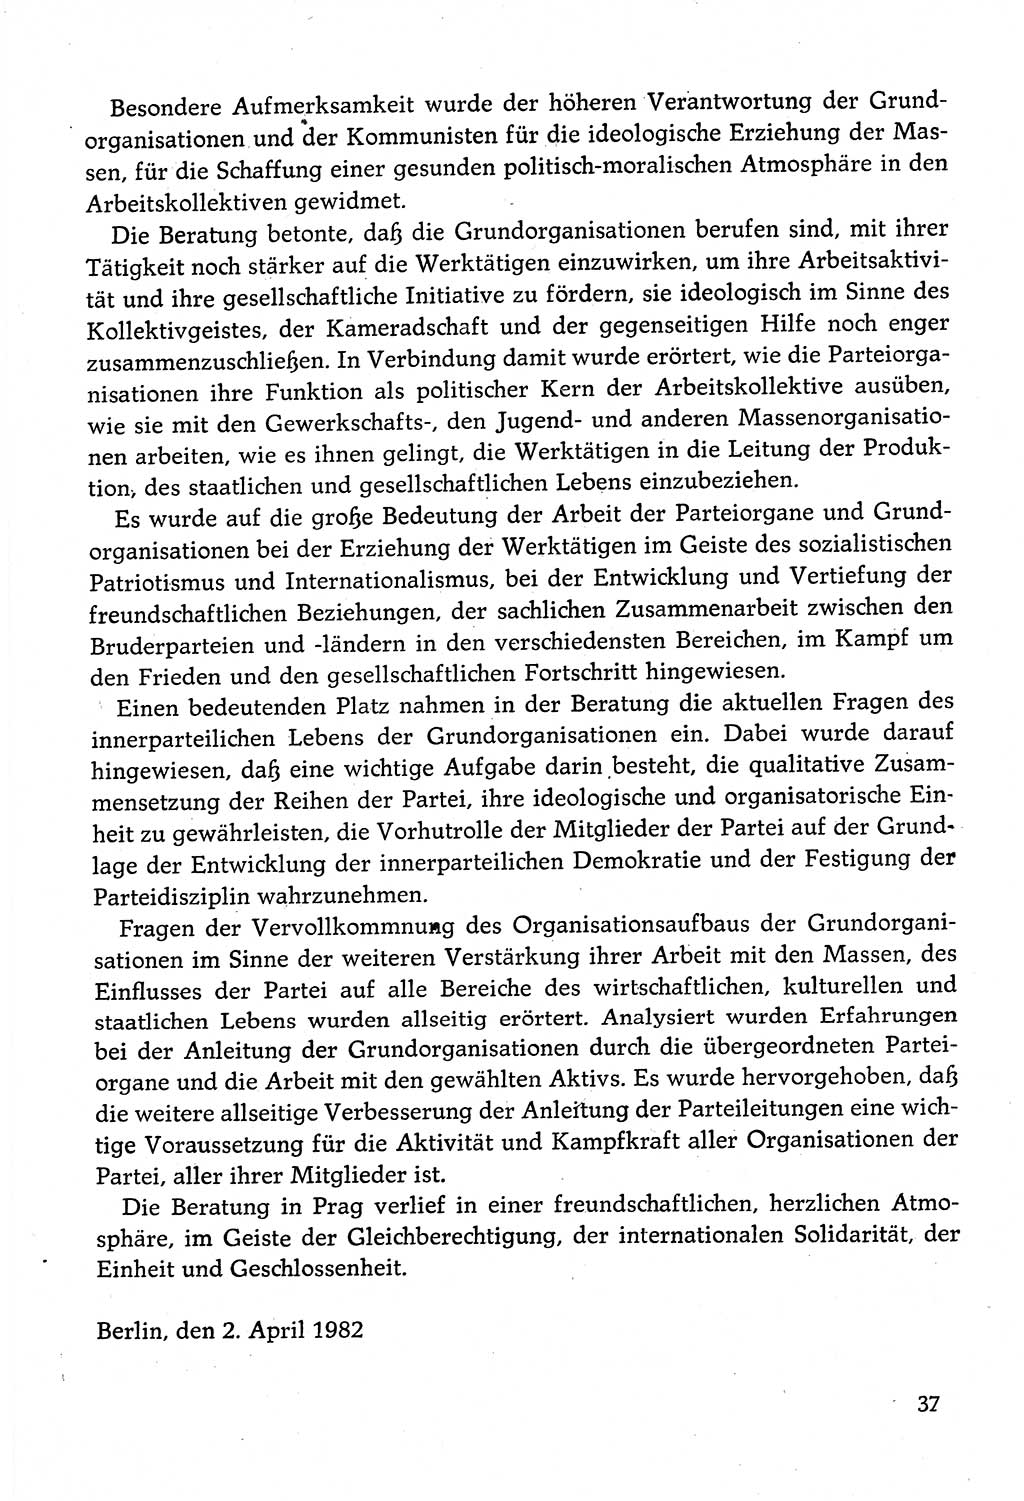 Dokumente der Sozialistischen Einheitspartei Deutschlands (SED) [Deutsche Demokratische Republik (DDR)] 1982-1983, Seite 37 (Dok. SED DDR 1982-1983, S. 37)